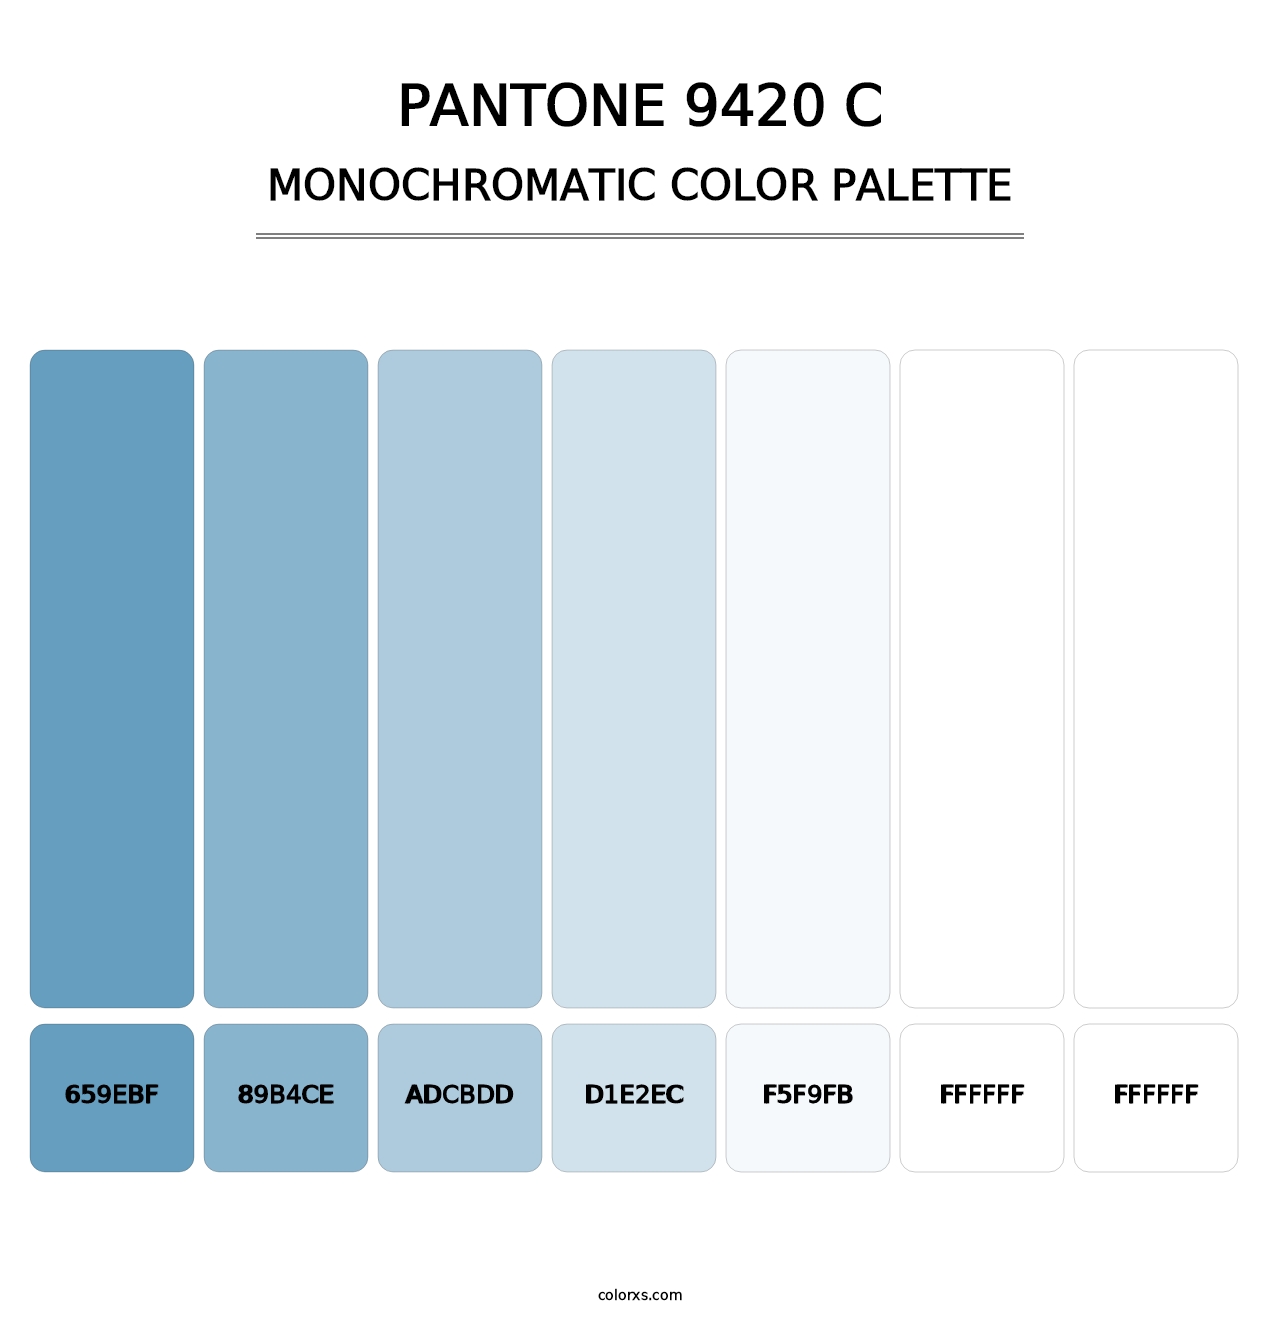 PANTONE 9420 C - Monochromatic Color Palette